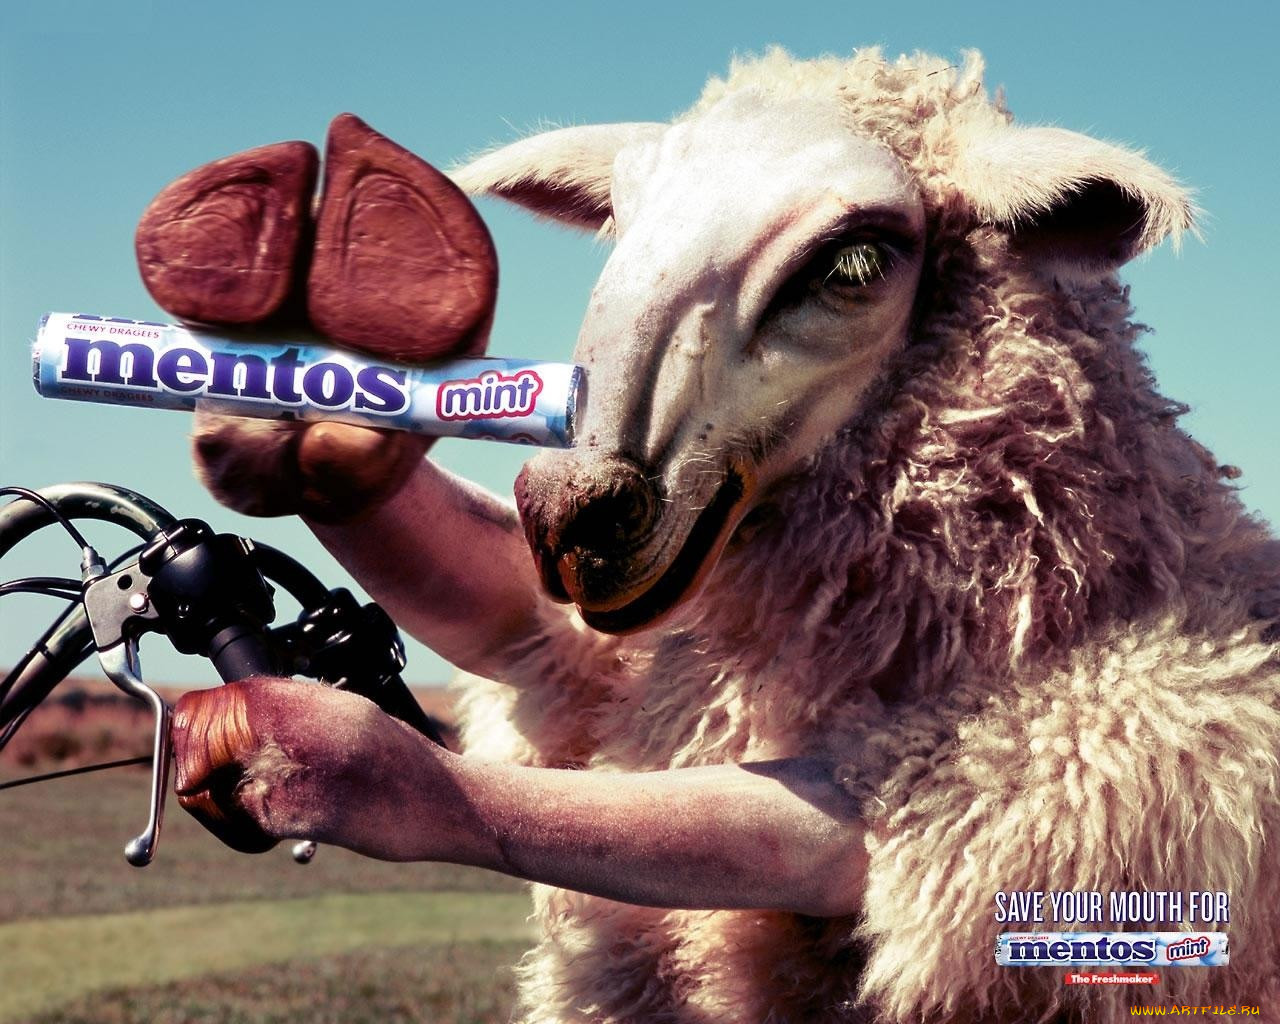 Известные рекламные ролики. Реклама ментос с овцами. Овца из рекламы ментос. Реклама 90-х. Овечка в рекламе.